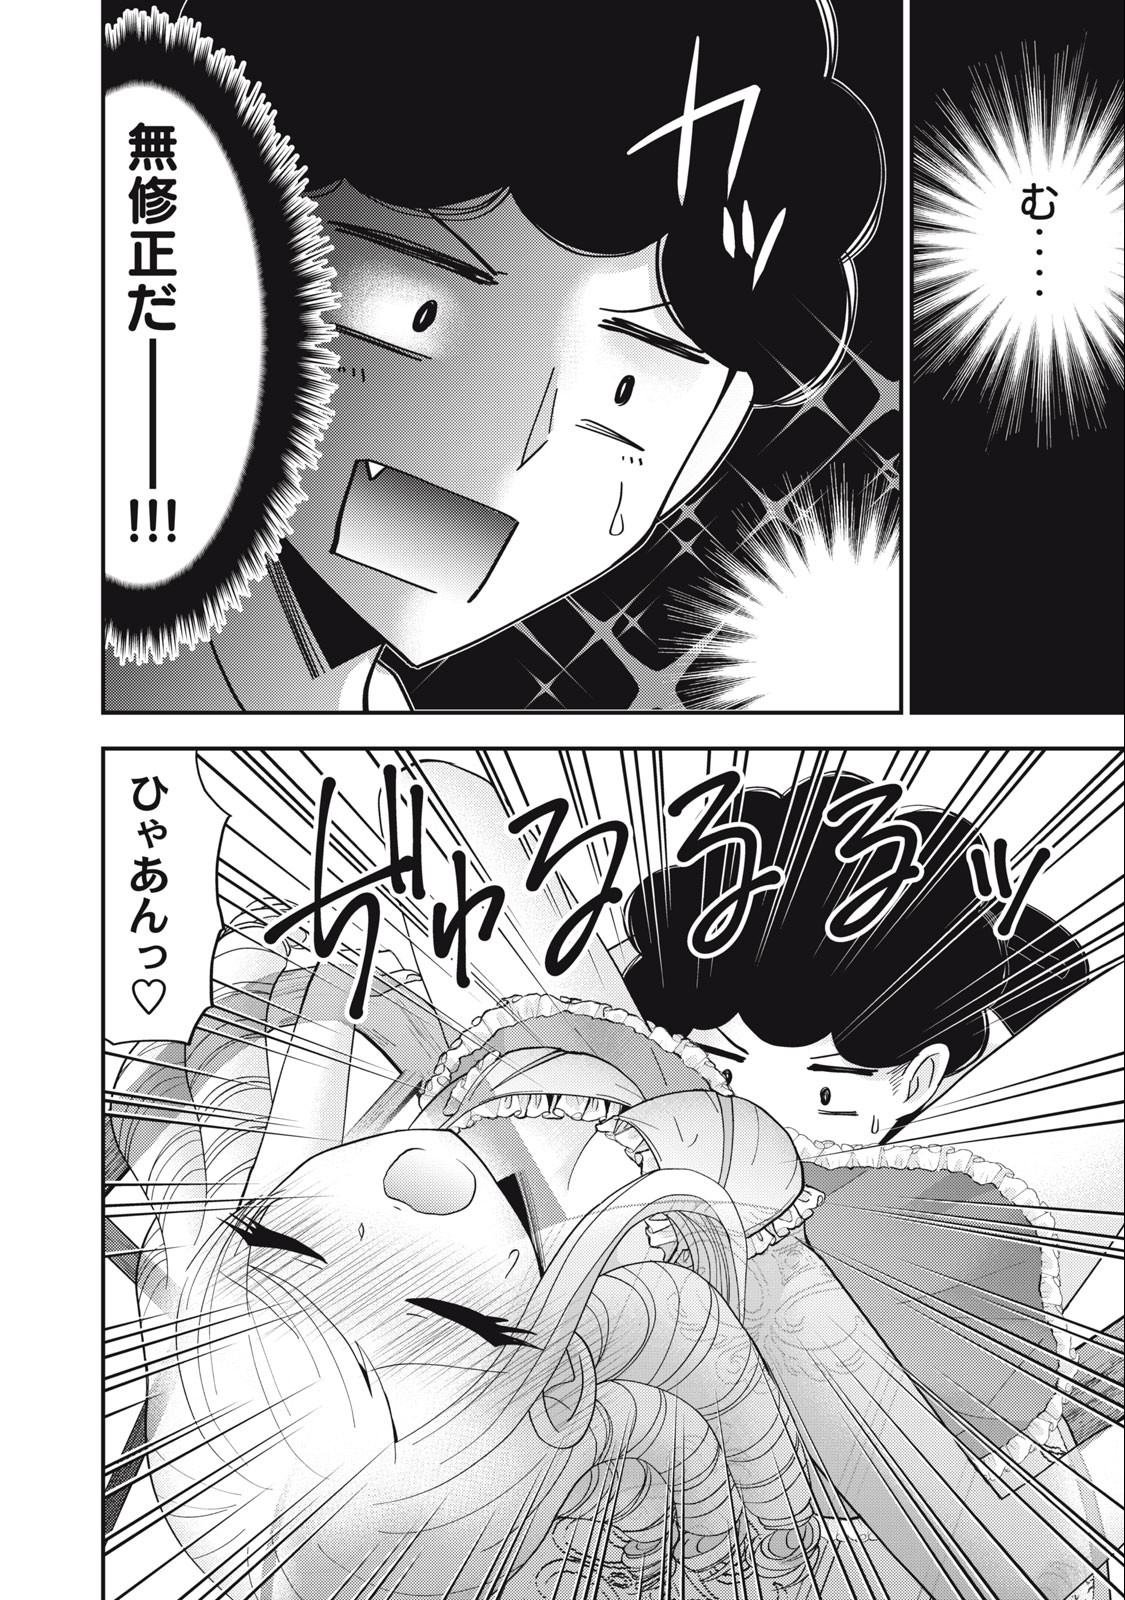 Yumeutsutsu no Hana no Sono - Chapter 10 - Page 2